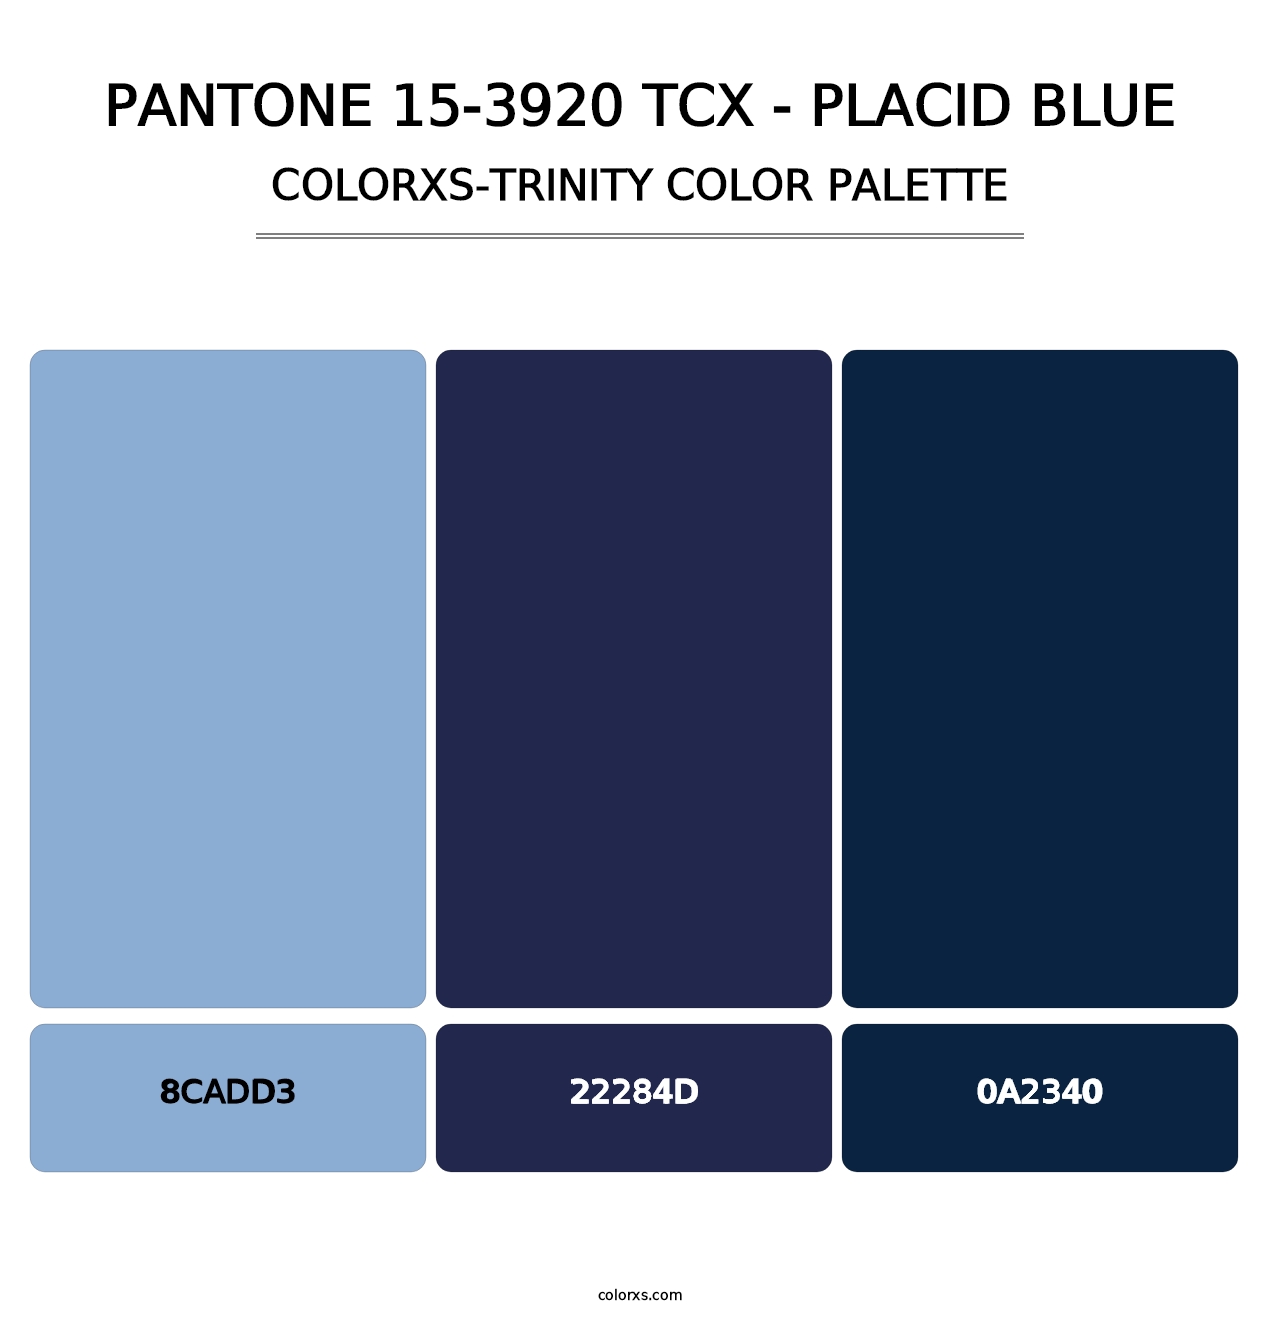 PANTONE 15-3920 TCX - Placid Blue - Colorxs Trinity Palette